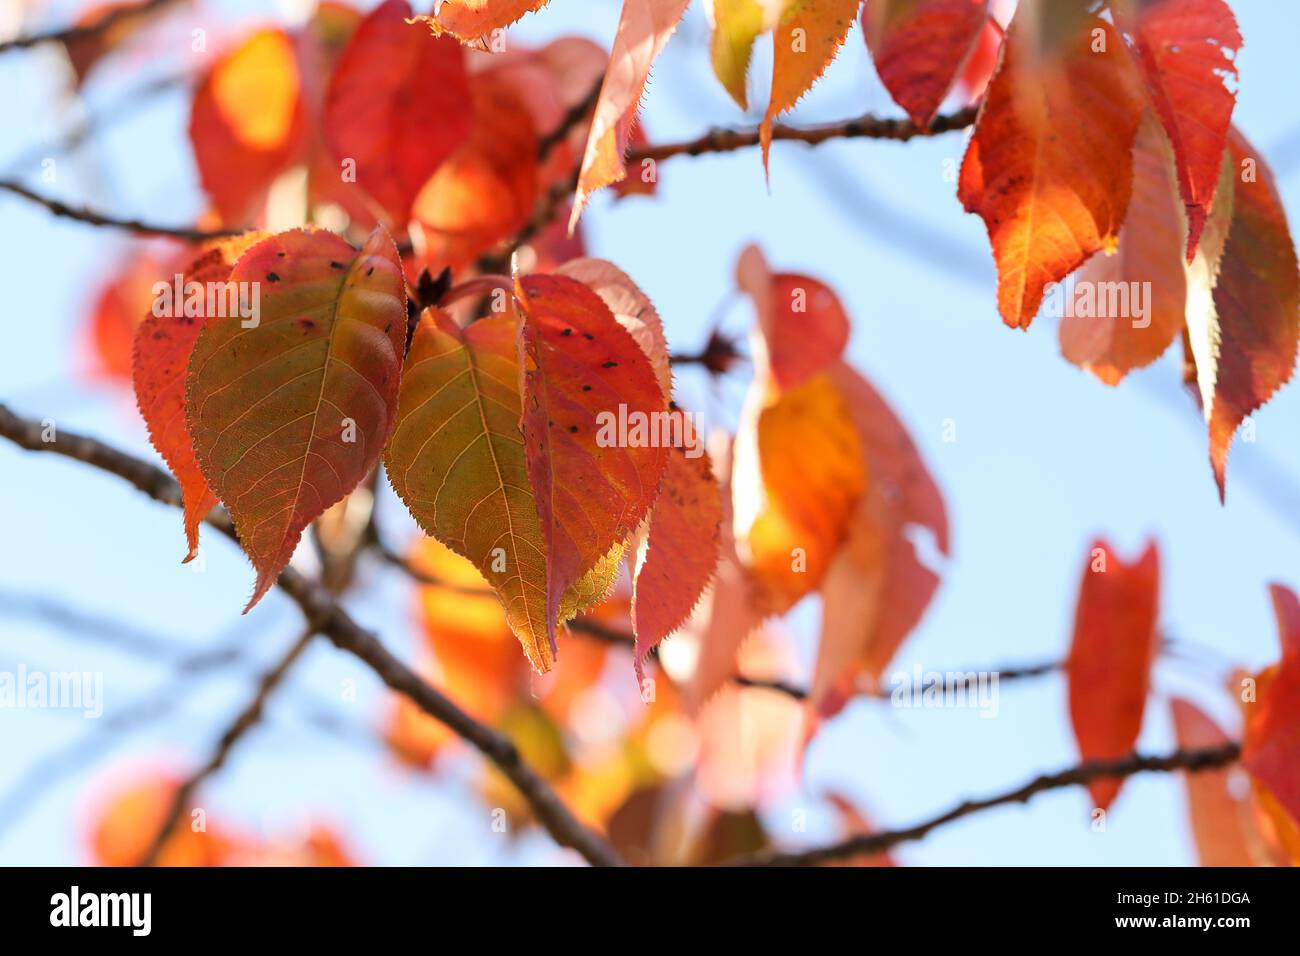 Feuilles d'automne aux couleurs orange rouges saisonnières, nature macro.Tupelo ou Black Gum 'Nyssa sylvatica' sur la branche.Un arrière-plan doux et rêveur.Dublin, Irlande Banque D'Images